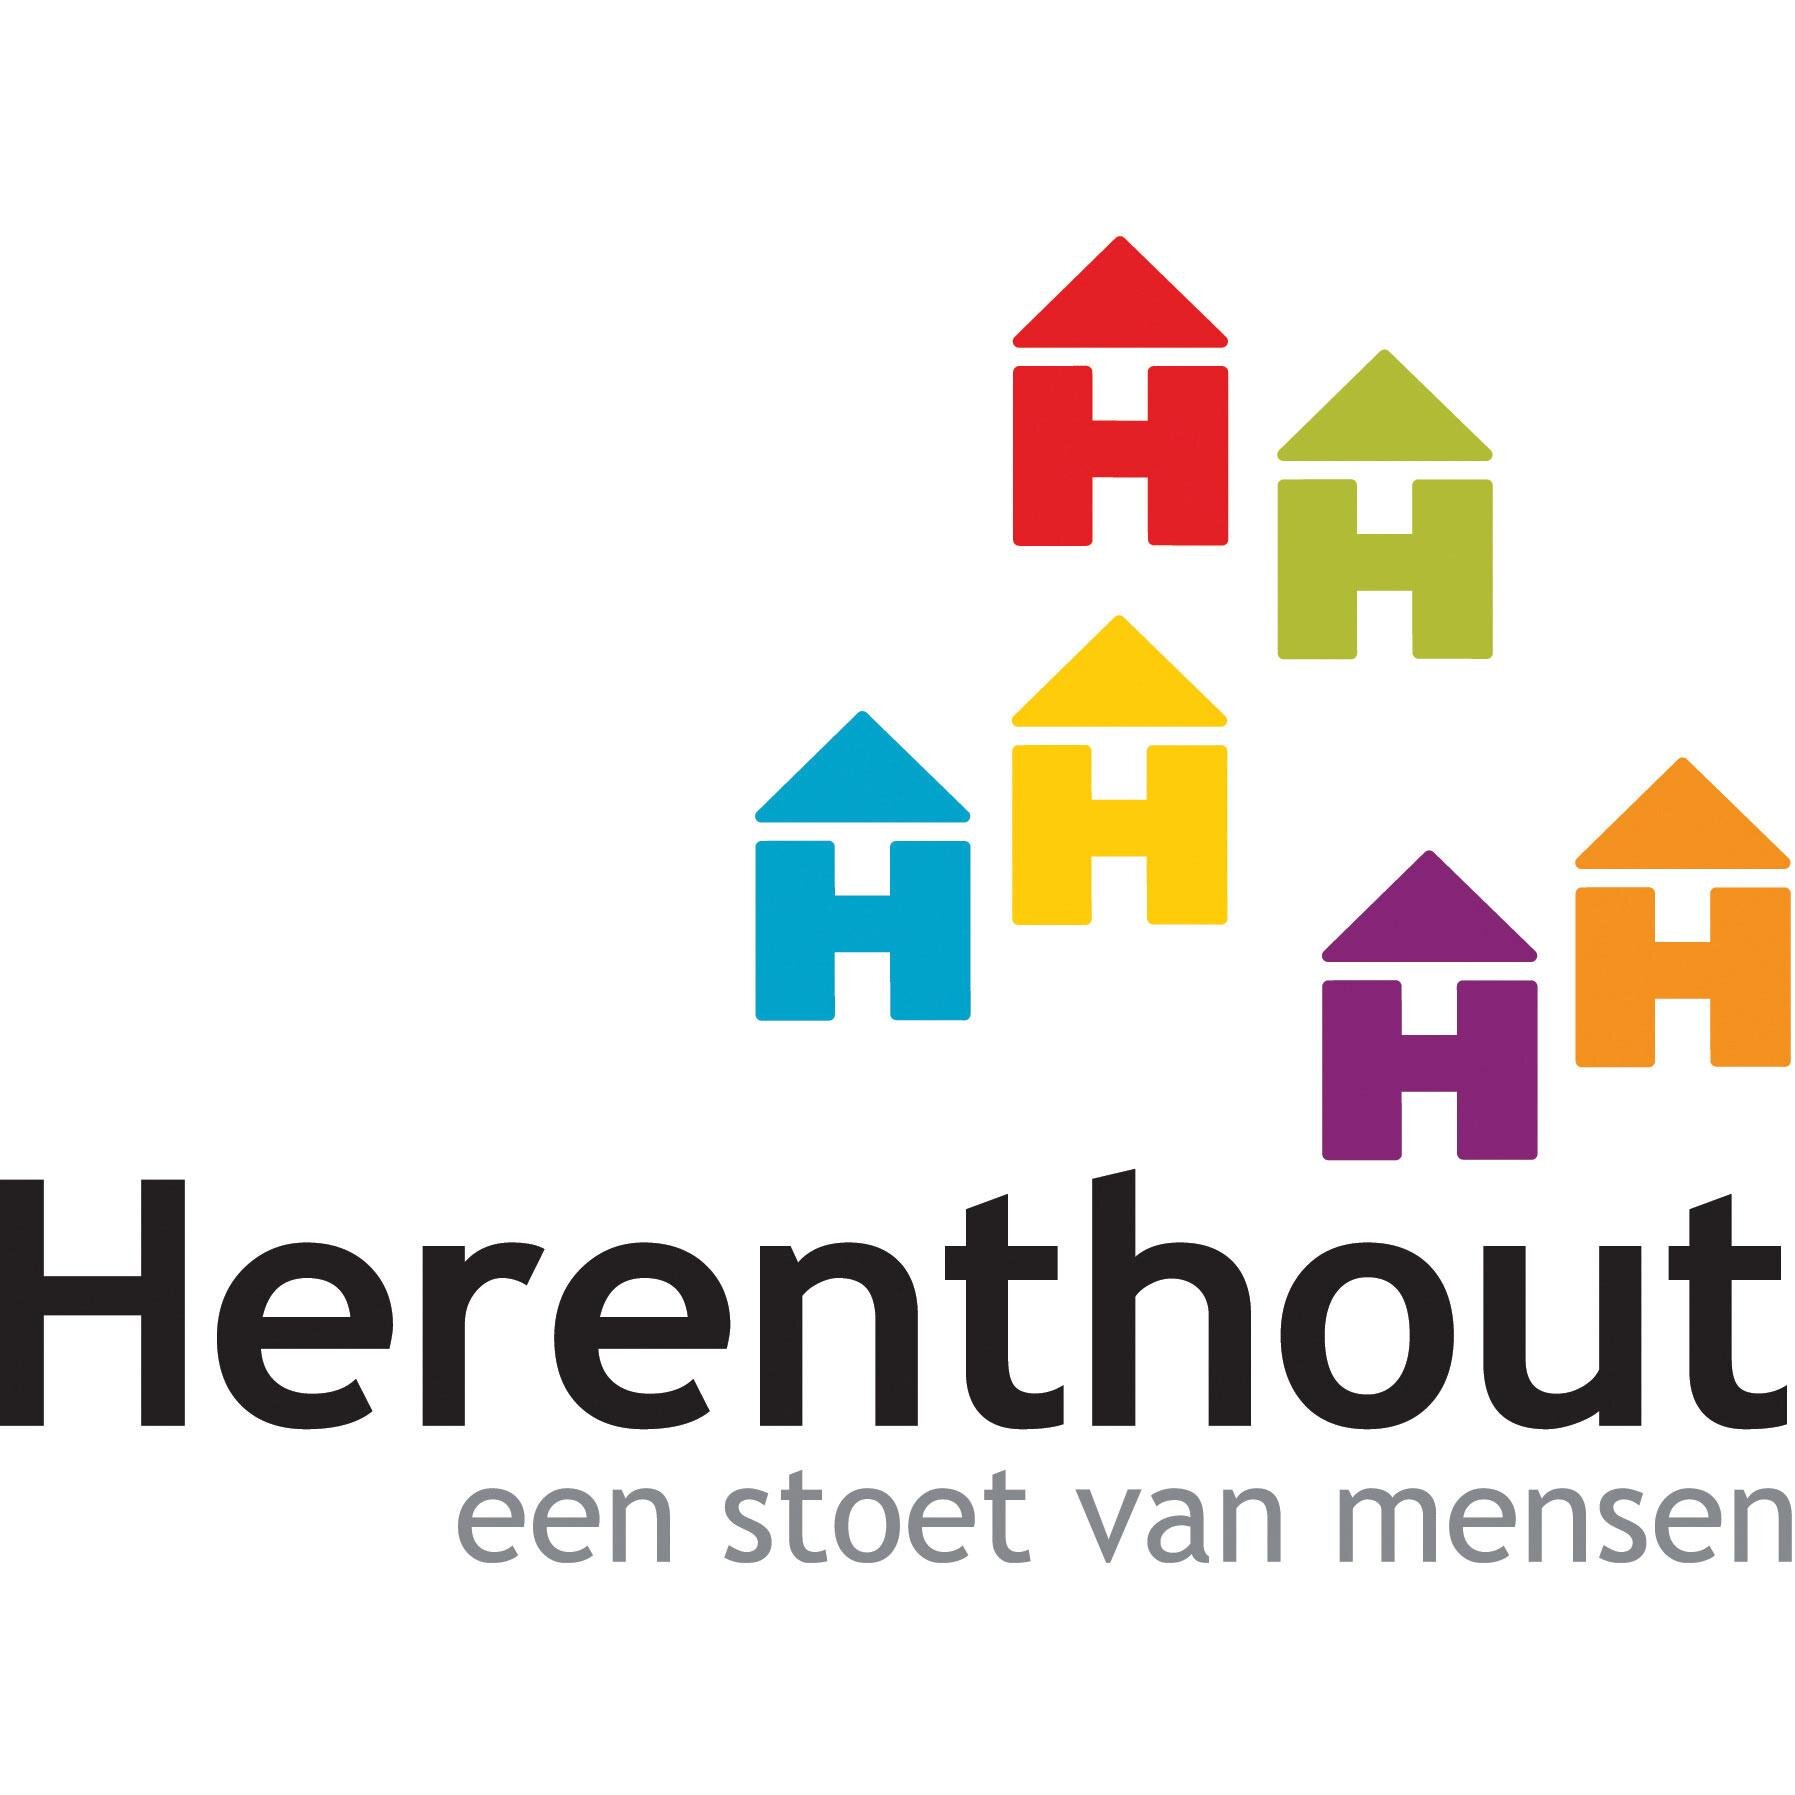 Officiële Twitter-account van Gemeentebestuur Herenthout, met info over evenementen en dienstverlening van de 6 loketten.